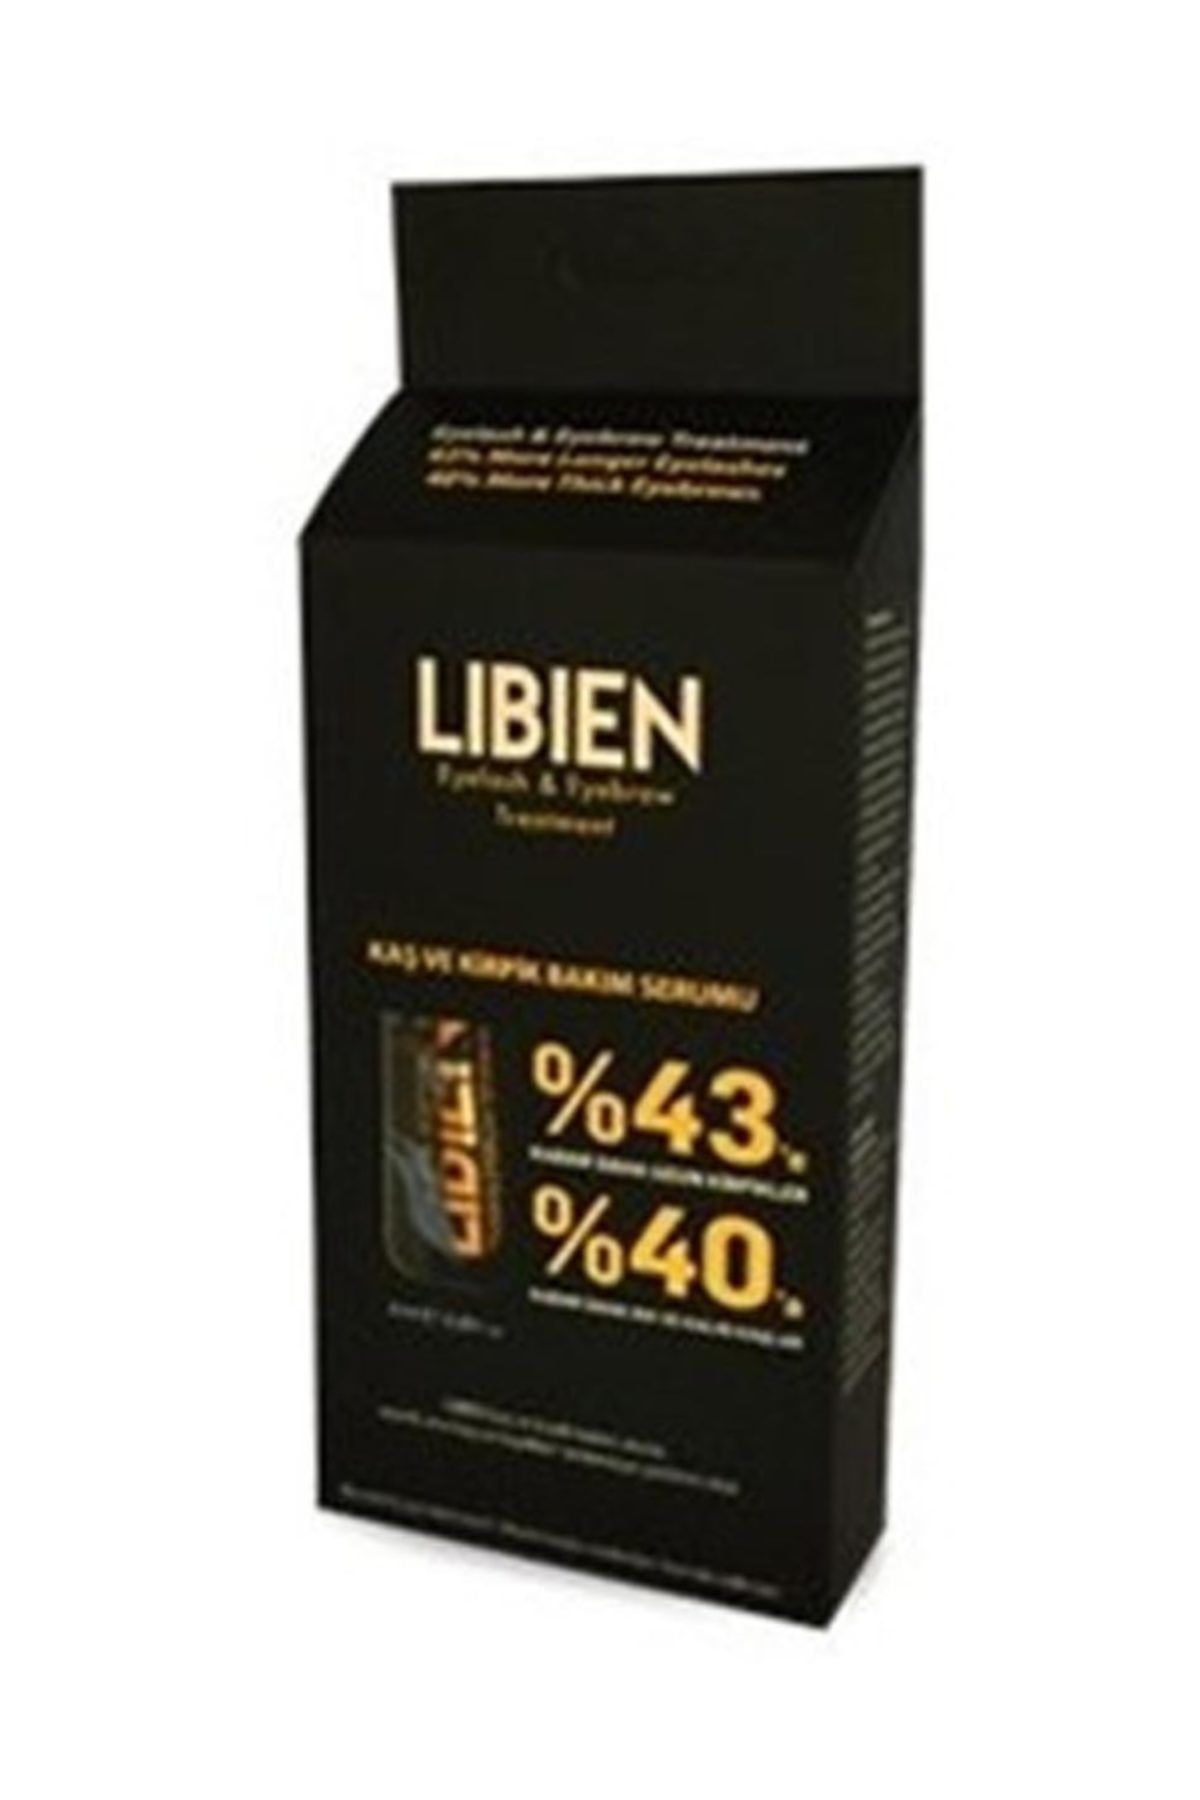 libien saç serum kullanıcı yorumları